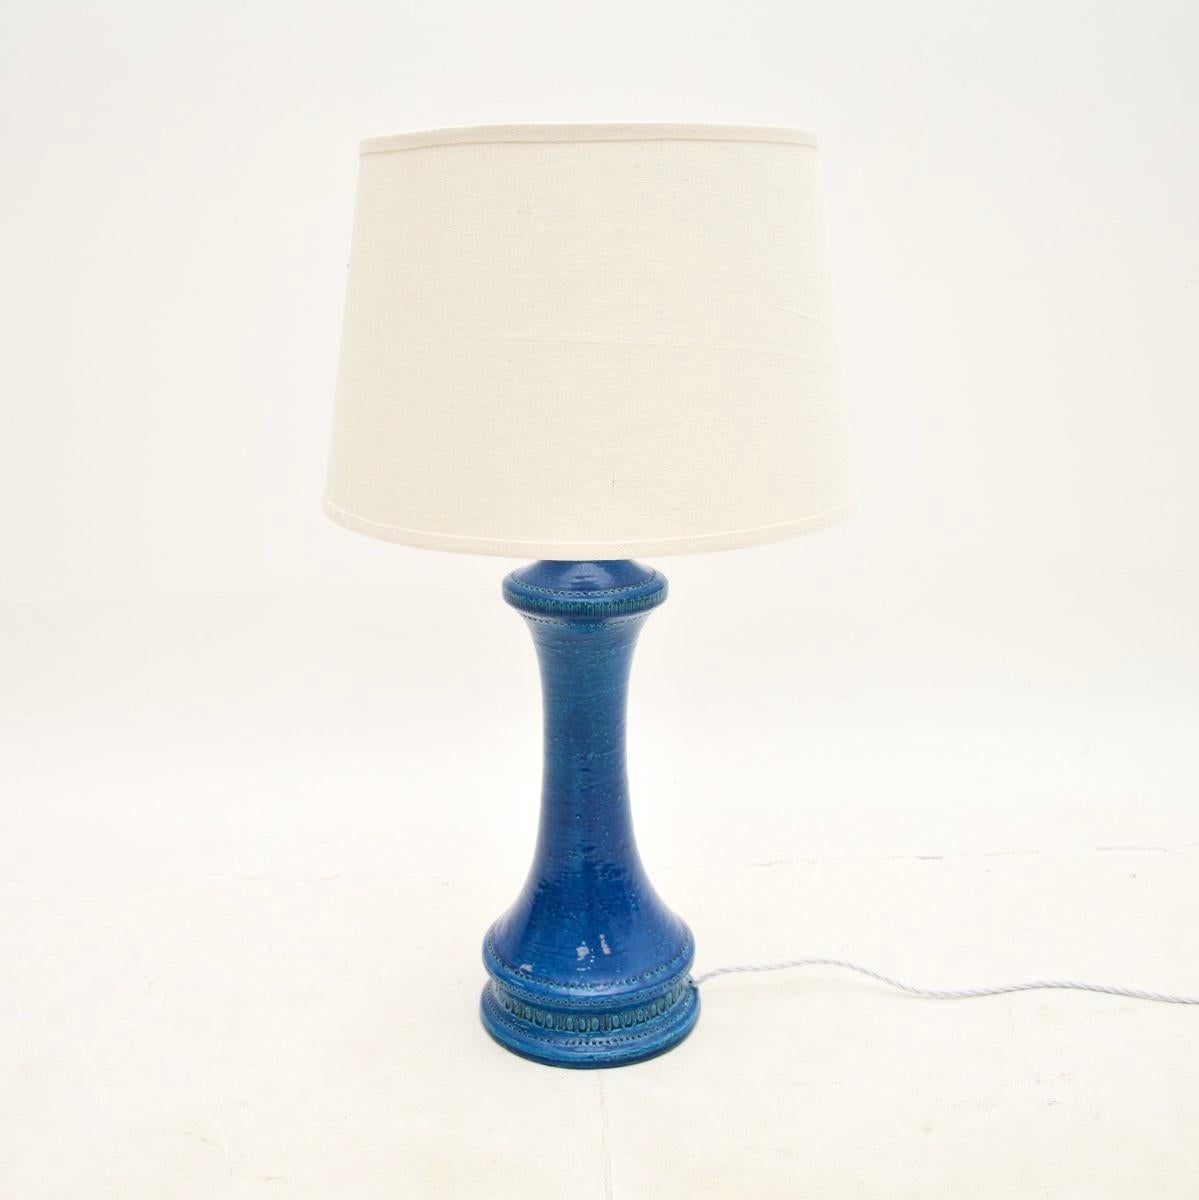 Une superbe lampe de table vintage en céramique italienne par Aldo Londi pour Bitossi. Il a été fabriqué en Italie et date des années 1960.

Il est d'un beau bleu rimini, avec un joli design et de superbes motifs. D'une taille impressionnante, il